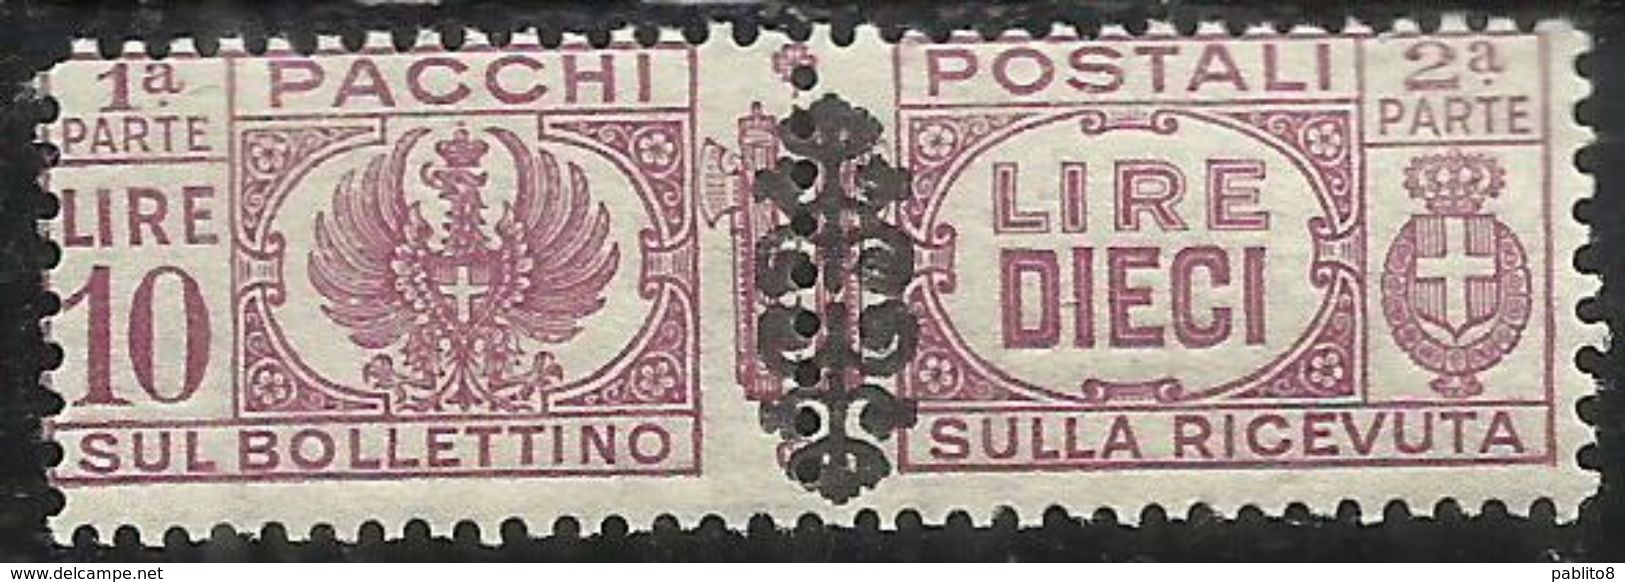 ITALIA REGNO ITALY KINGDOM 1945 LUOGOTENENZA PACCHI POSTALI PARCEL POST FREGIO LIRE 10 MNH - Postpaketten